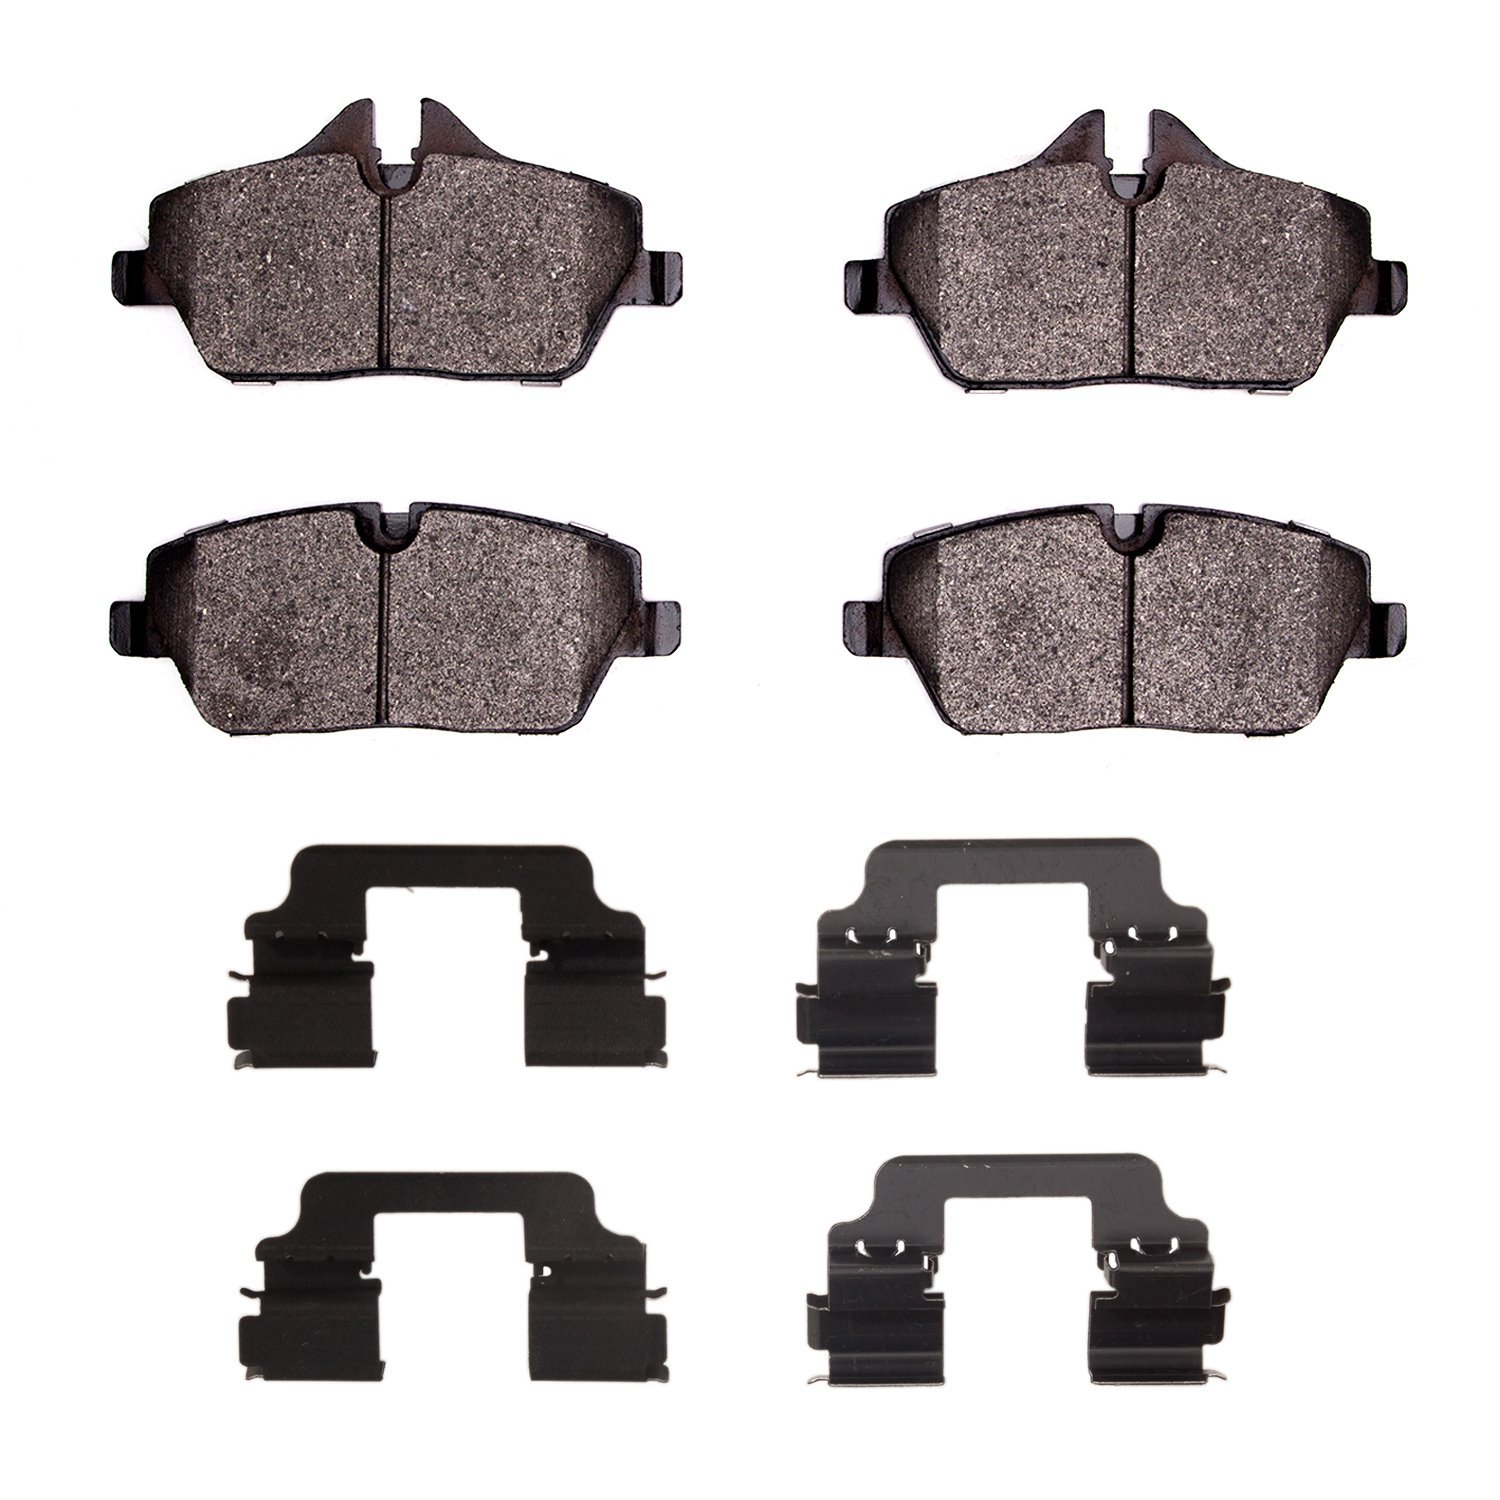 1551-1308-12 5000 Advanced Low-Metallic Brake Pads & Hardware Kit, 2014-2021 BMW, Position: Front